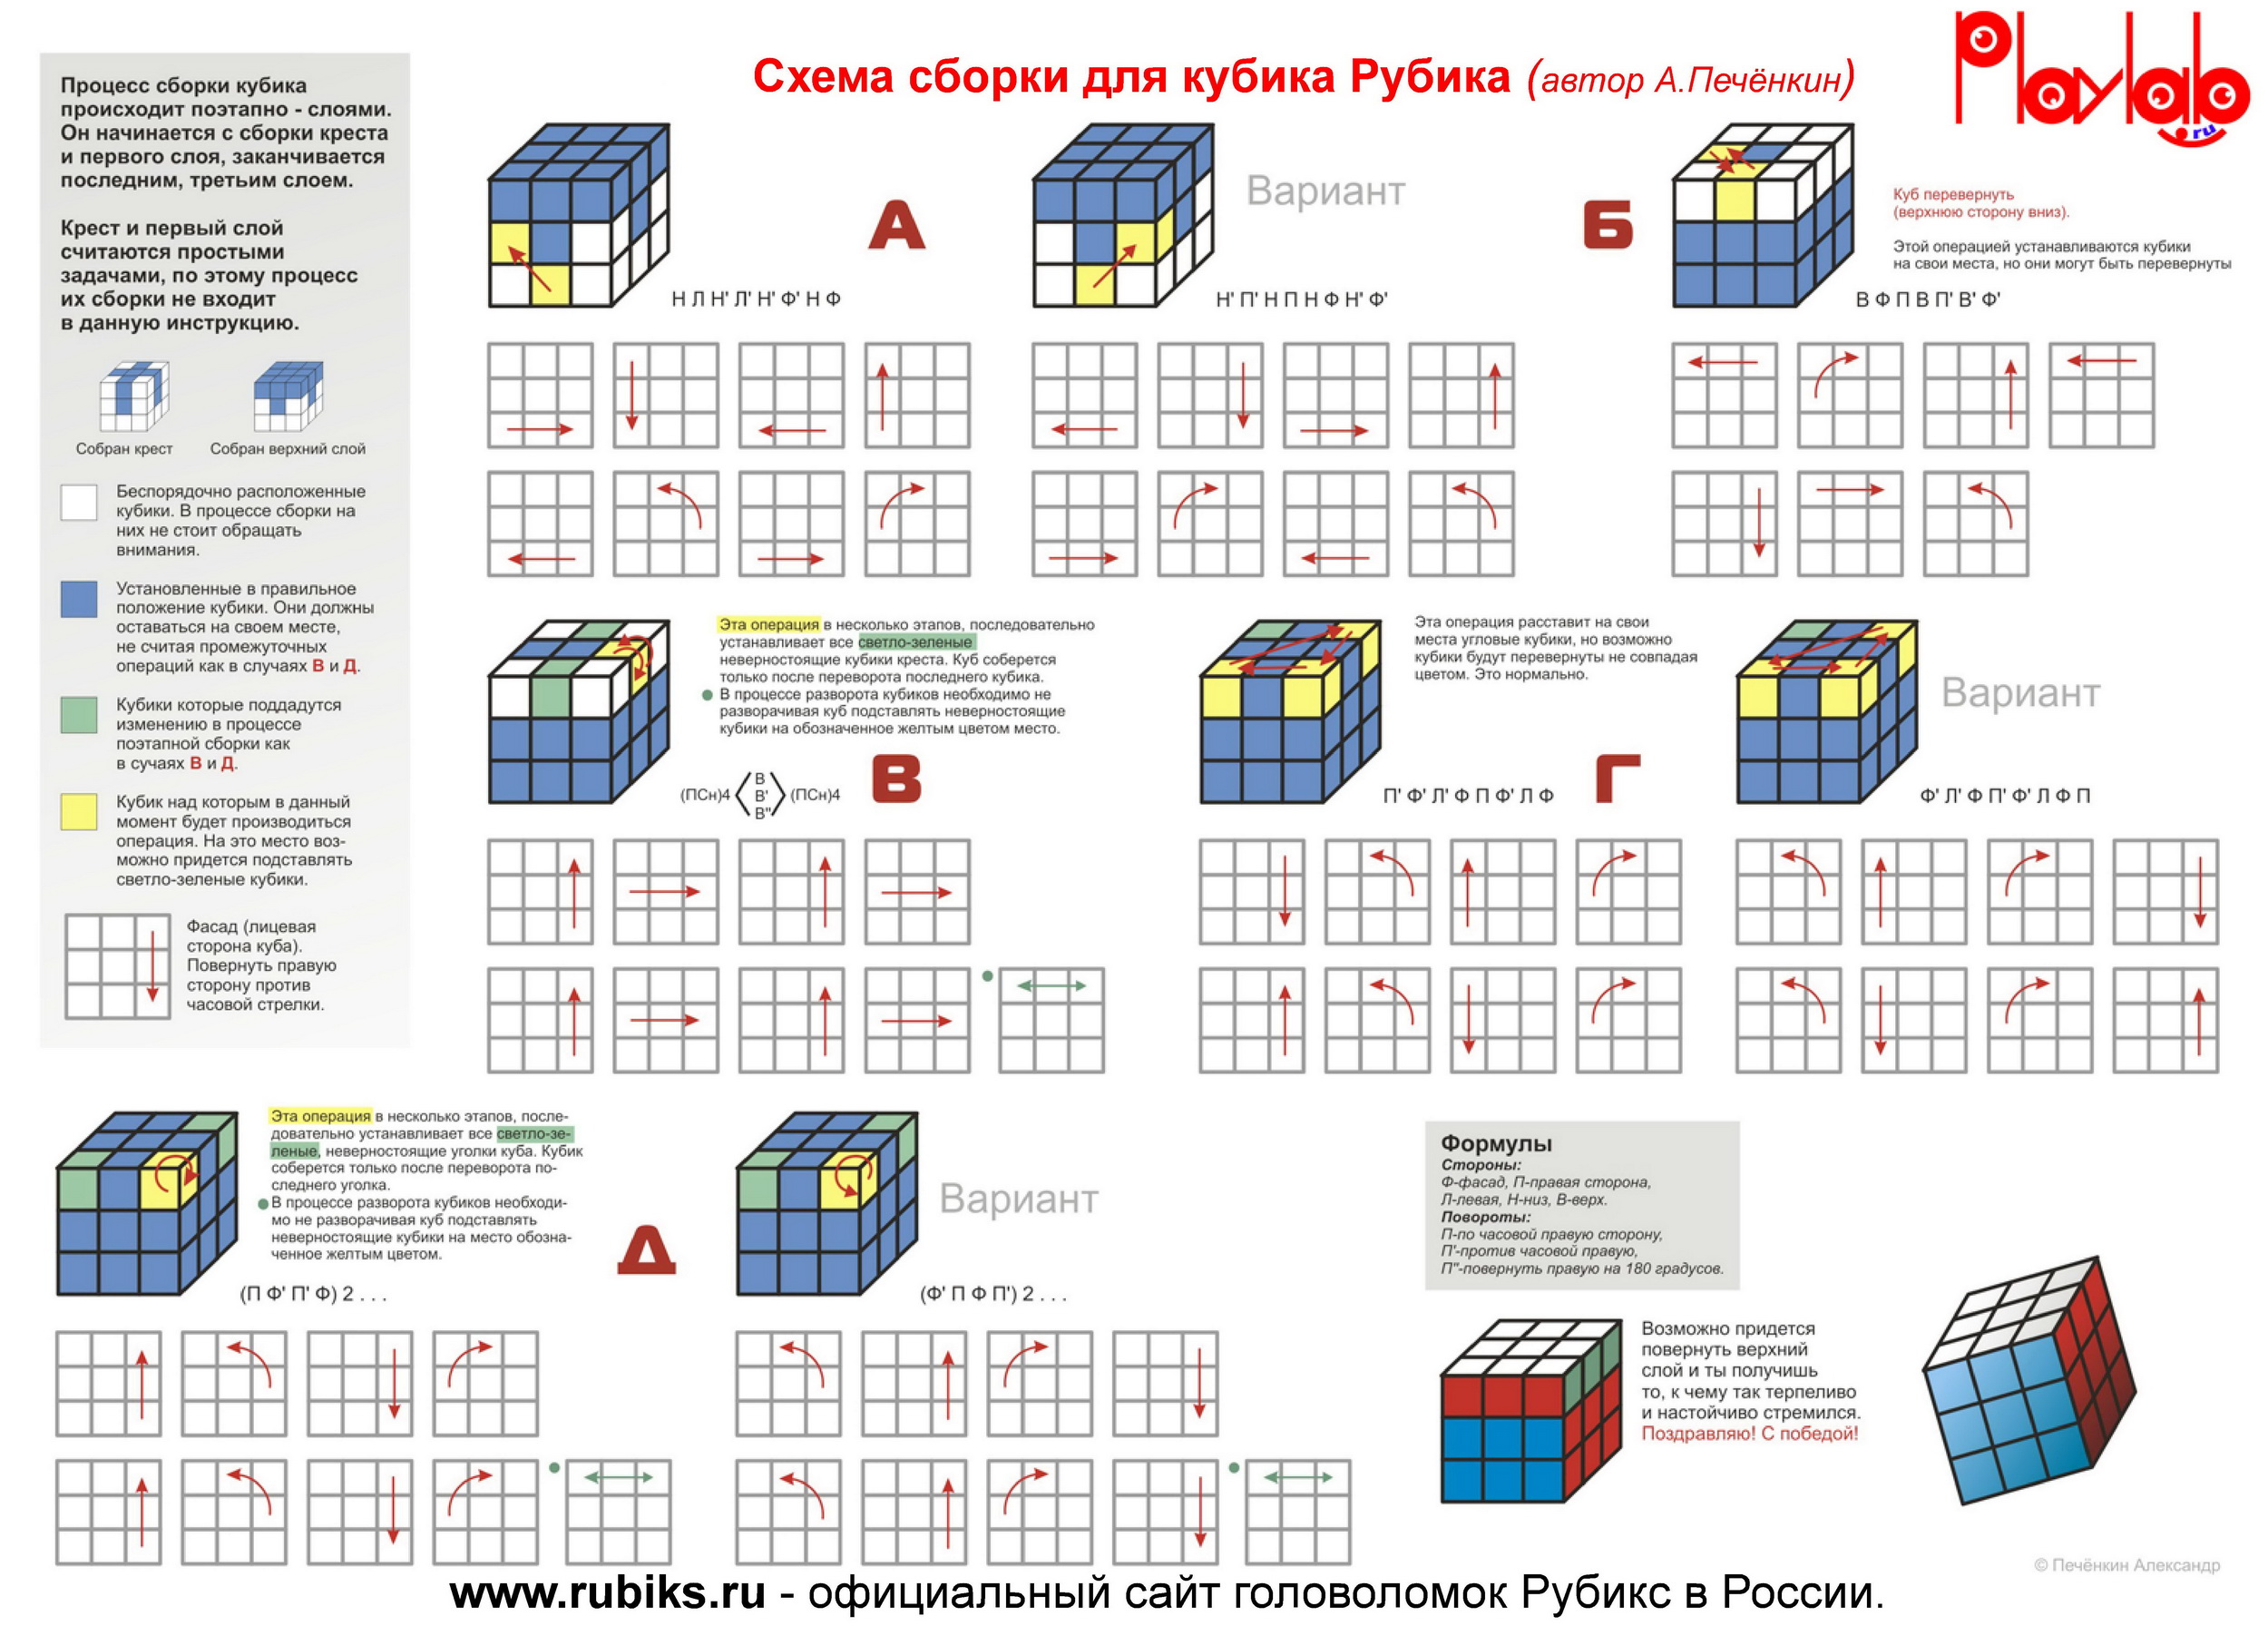 Методы сборки кубика 3х3